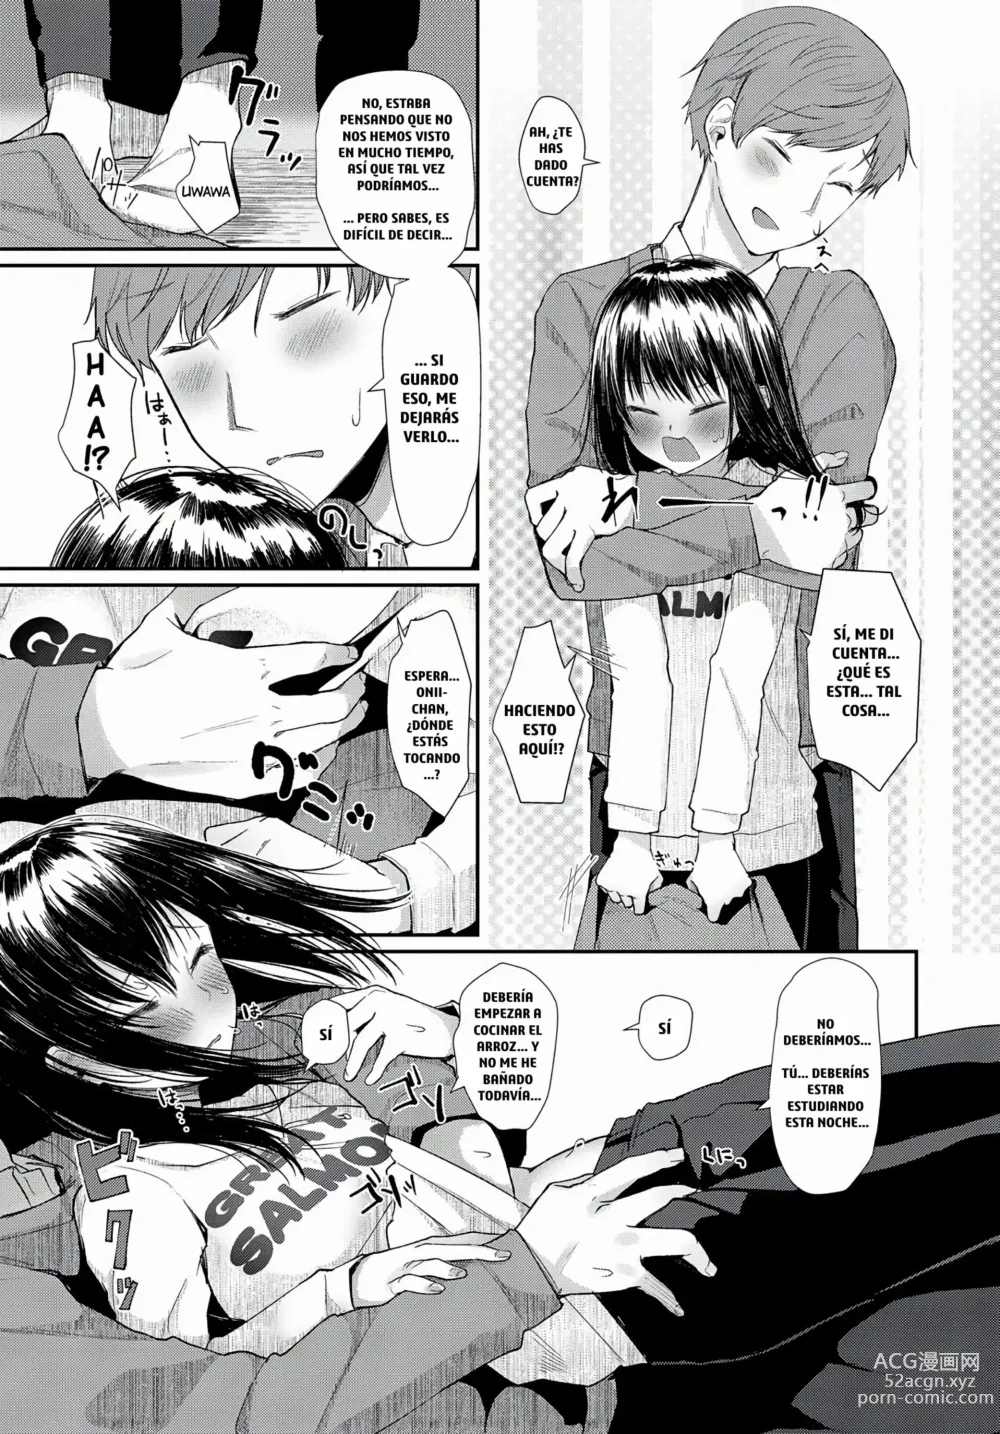 Page 3 of manga Hanarete Hajimete Kizuku Koto